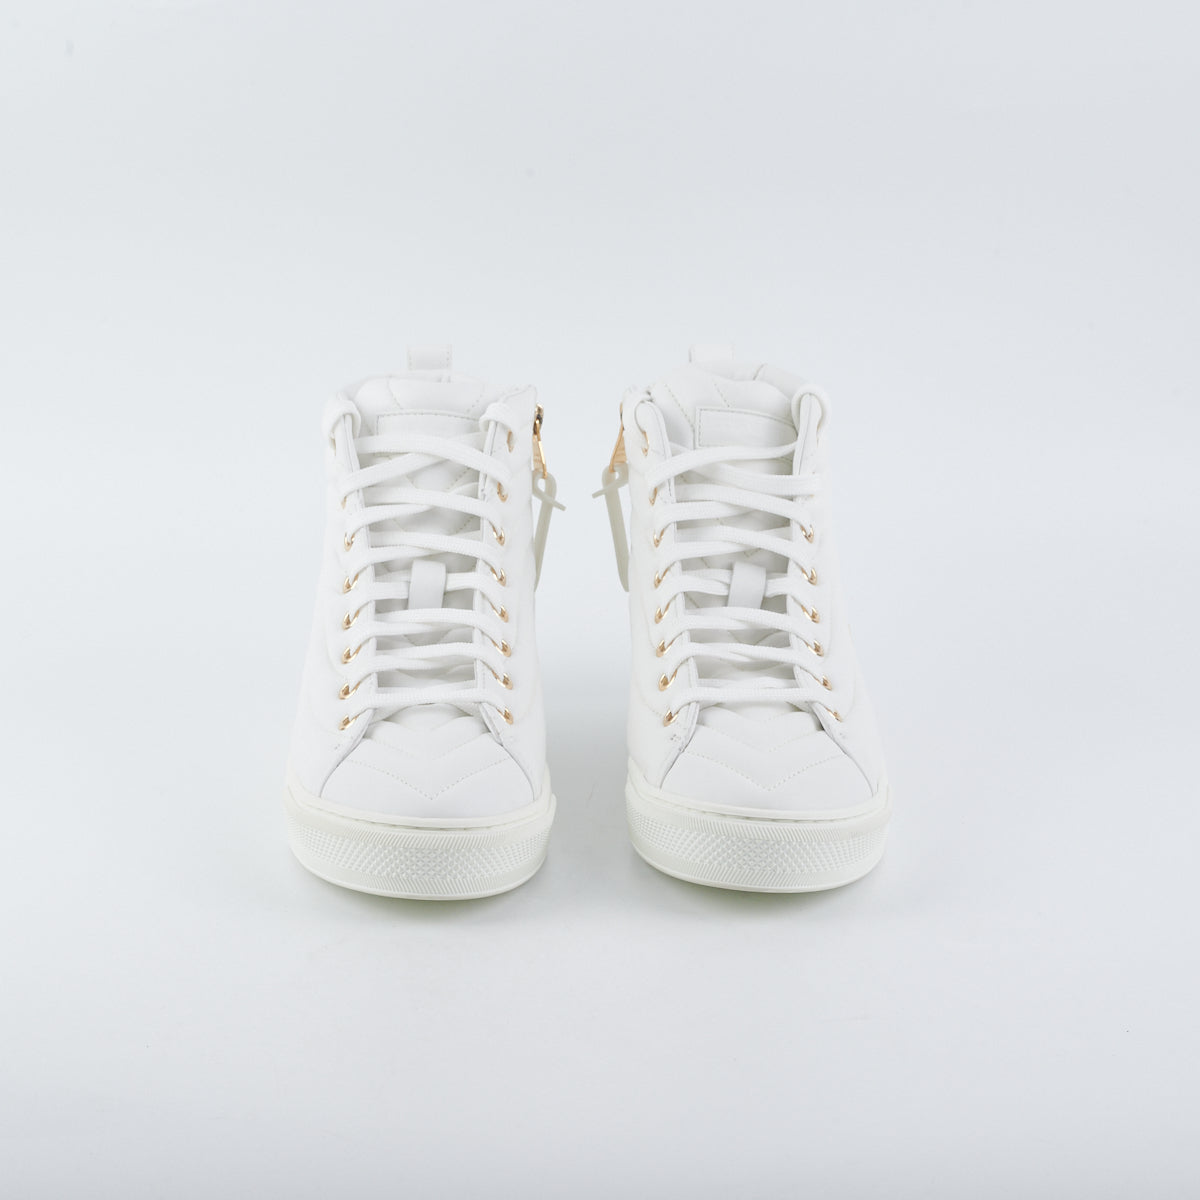 Louis Vuitton High Top White Sneaker Size 37 - THE PURSE AFFAIR